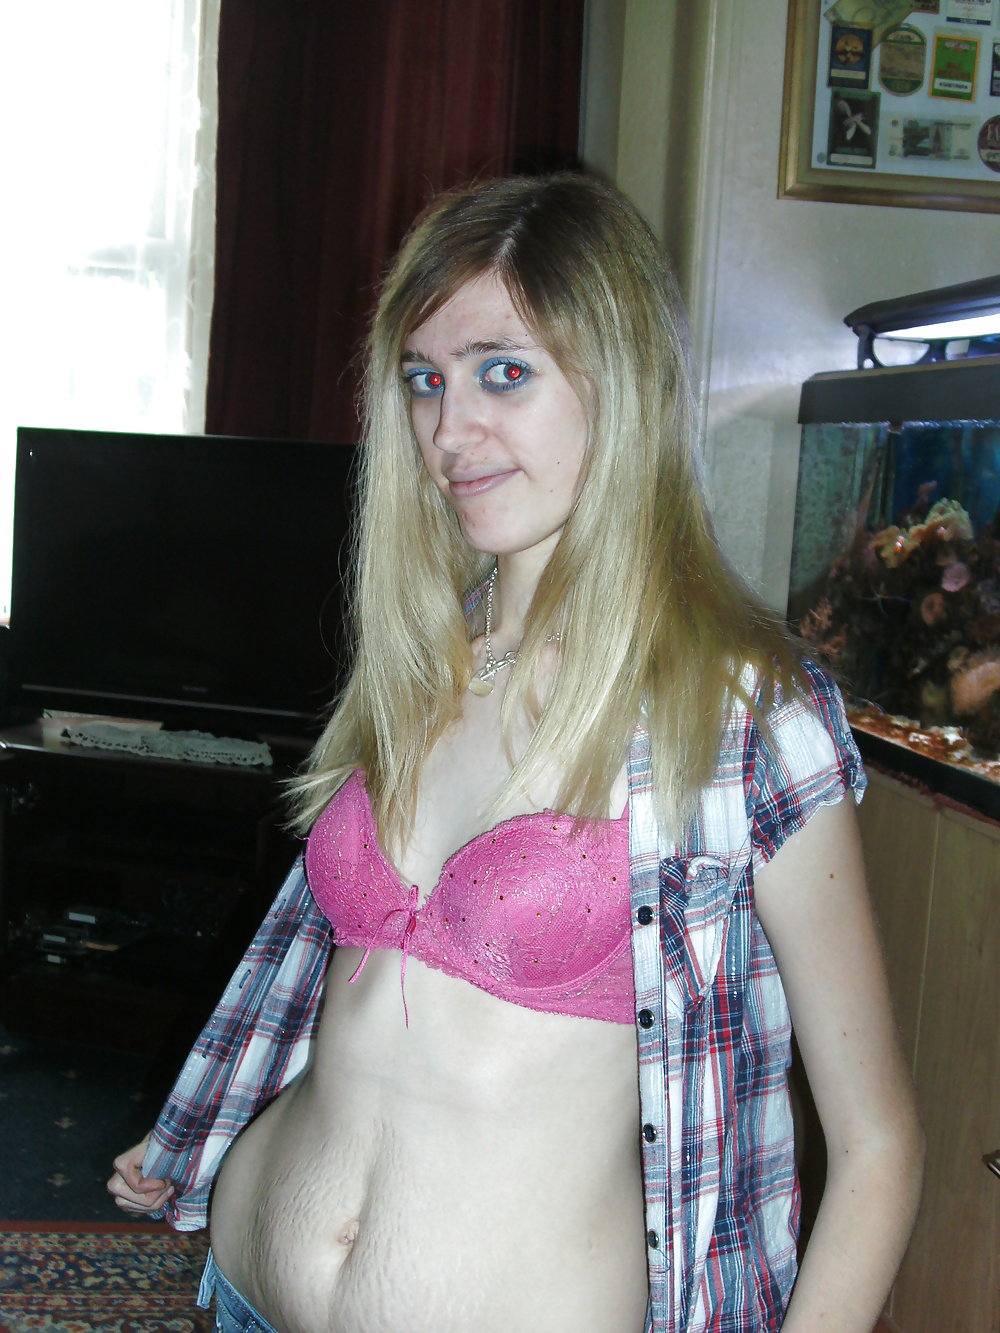 Pink bra and panties! #12279404